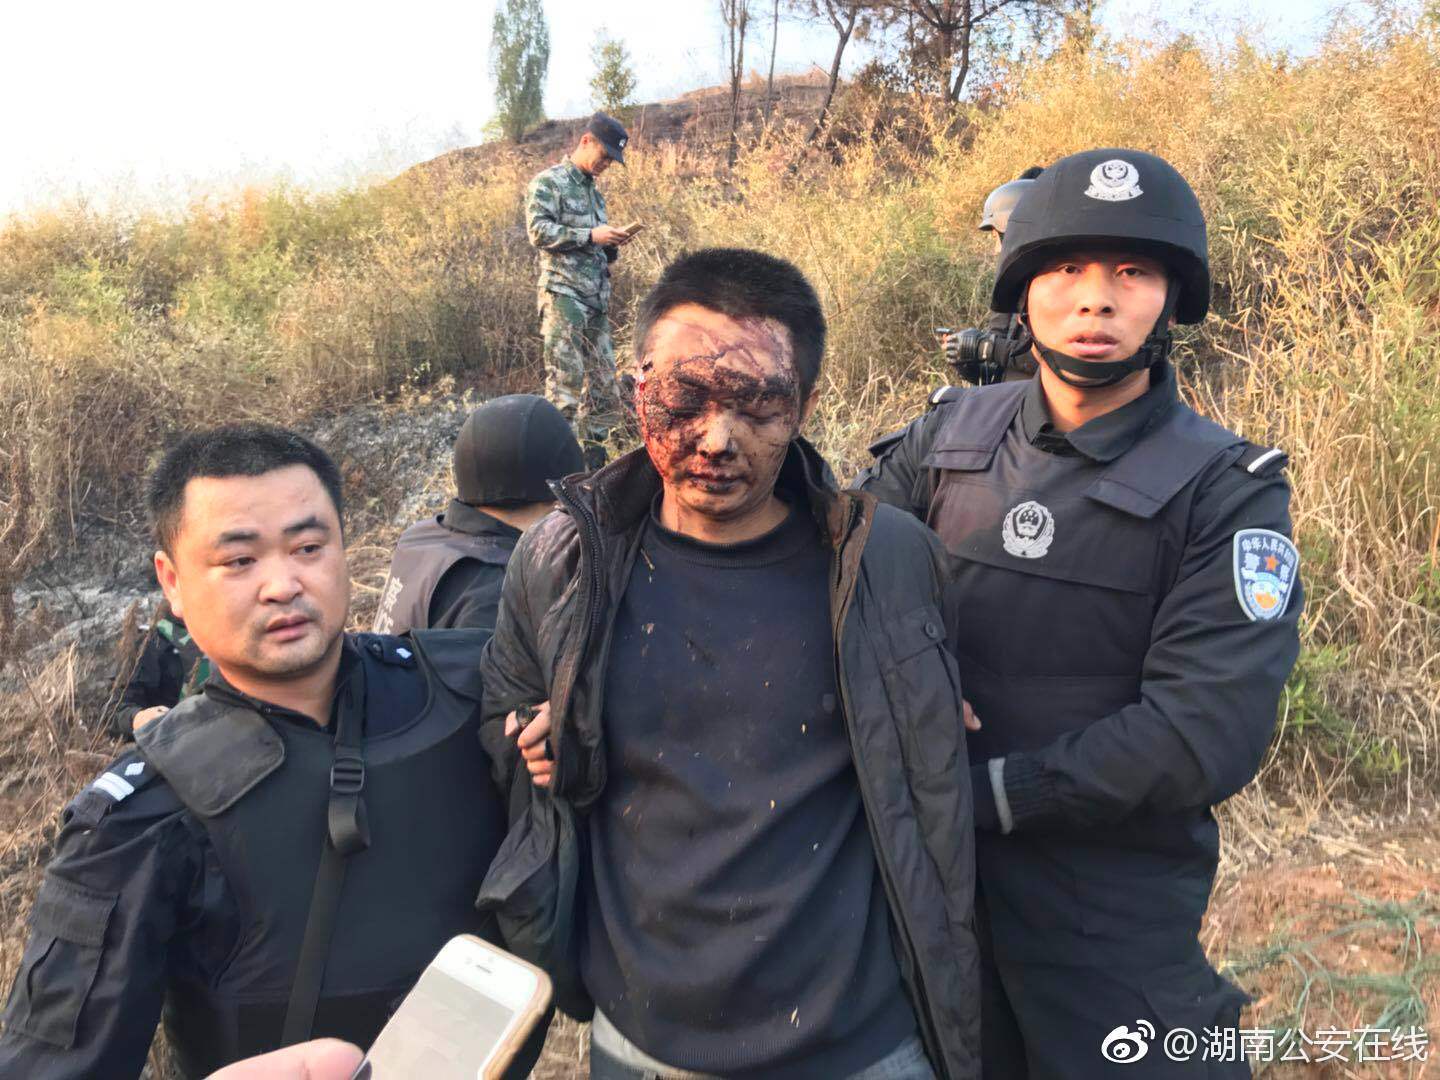 湖南拘留2名枪杀案造谣者 谣言恶心伤害受害者家人